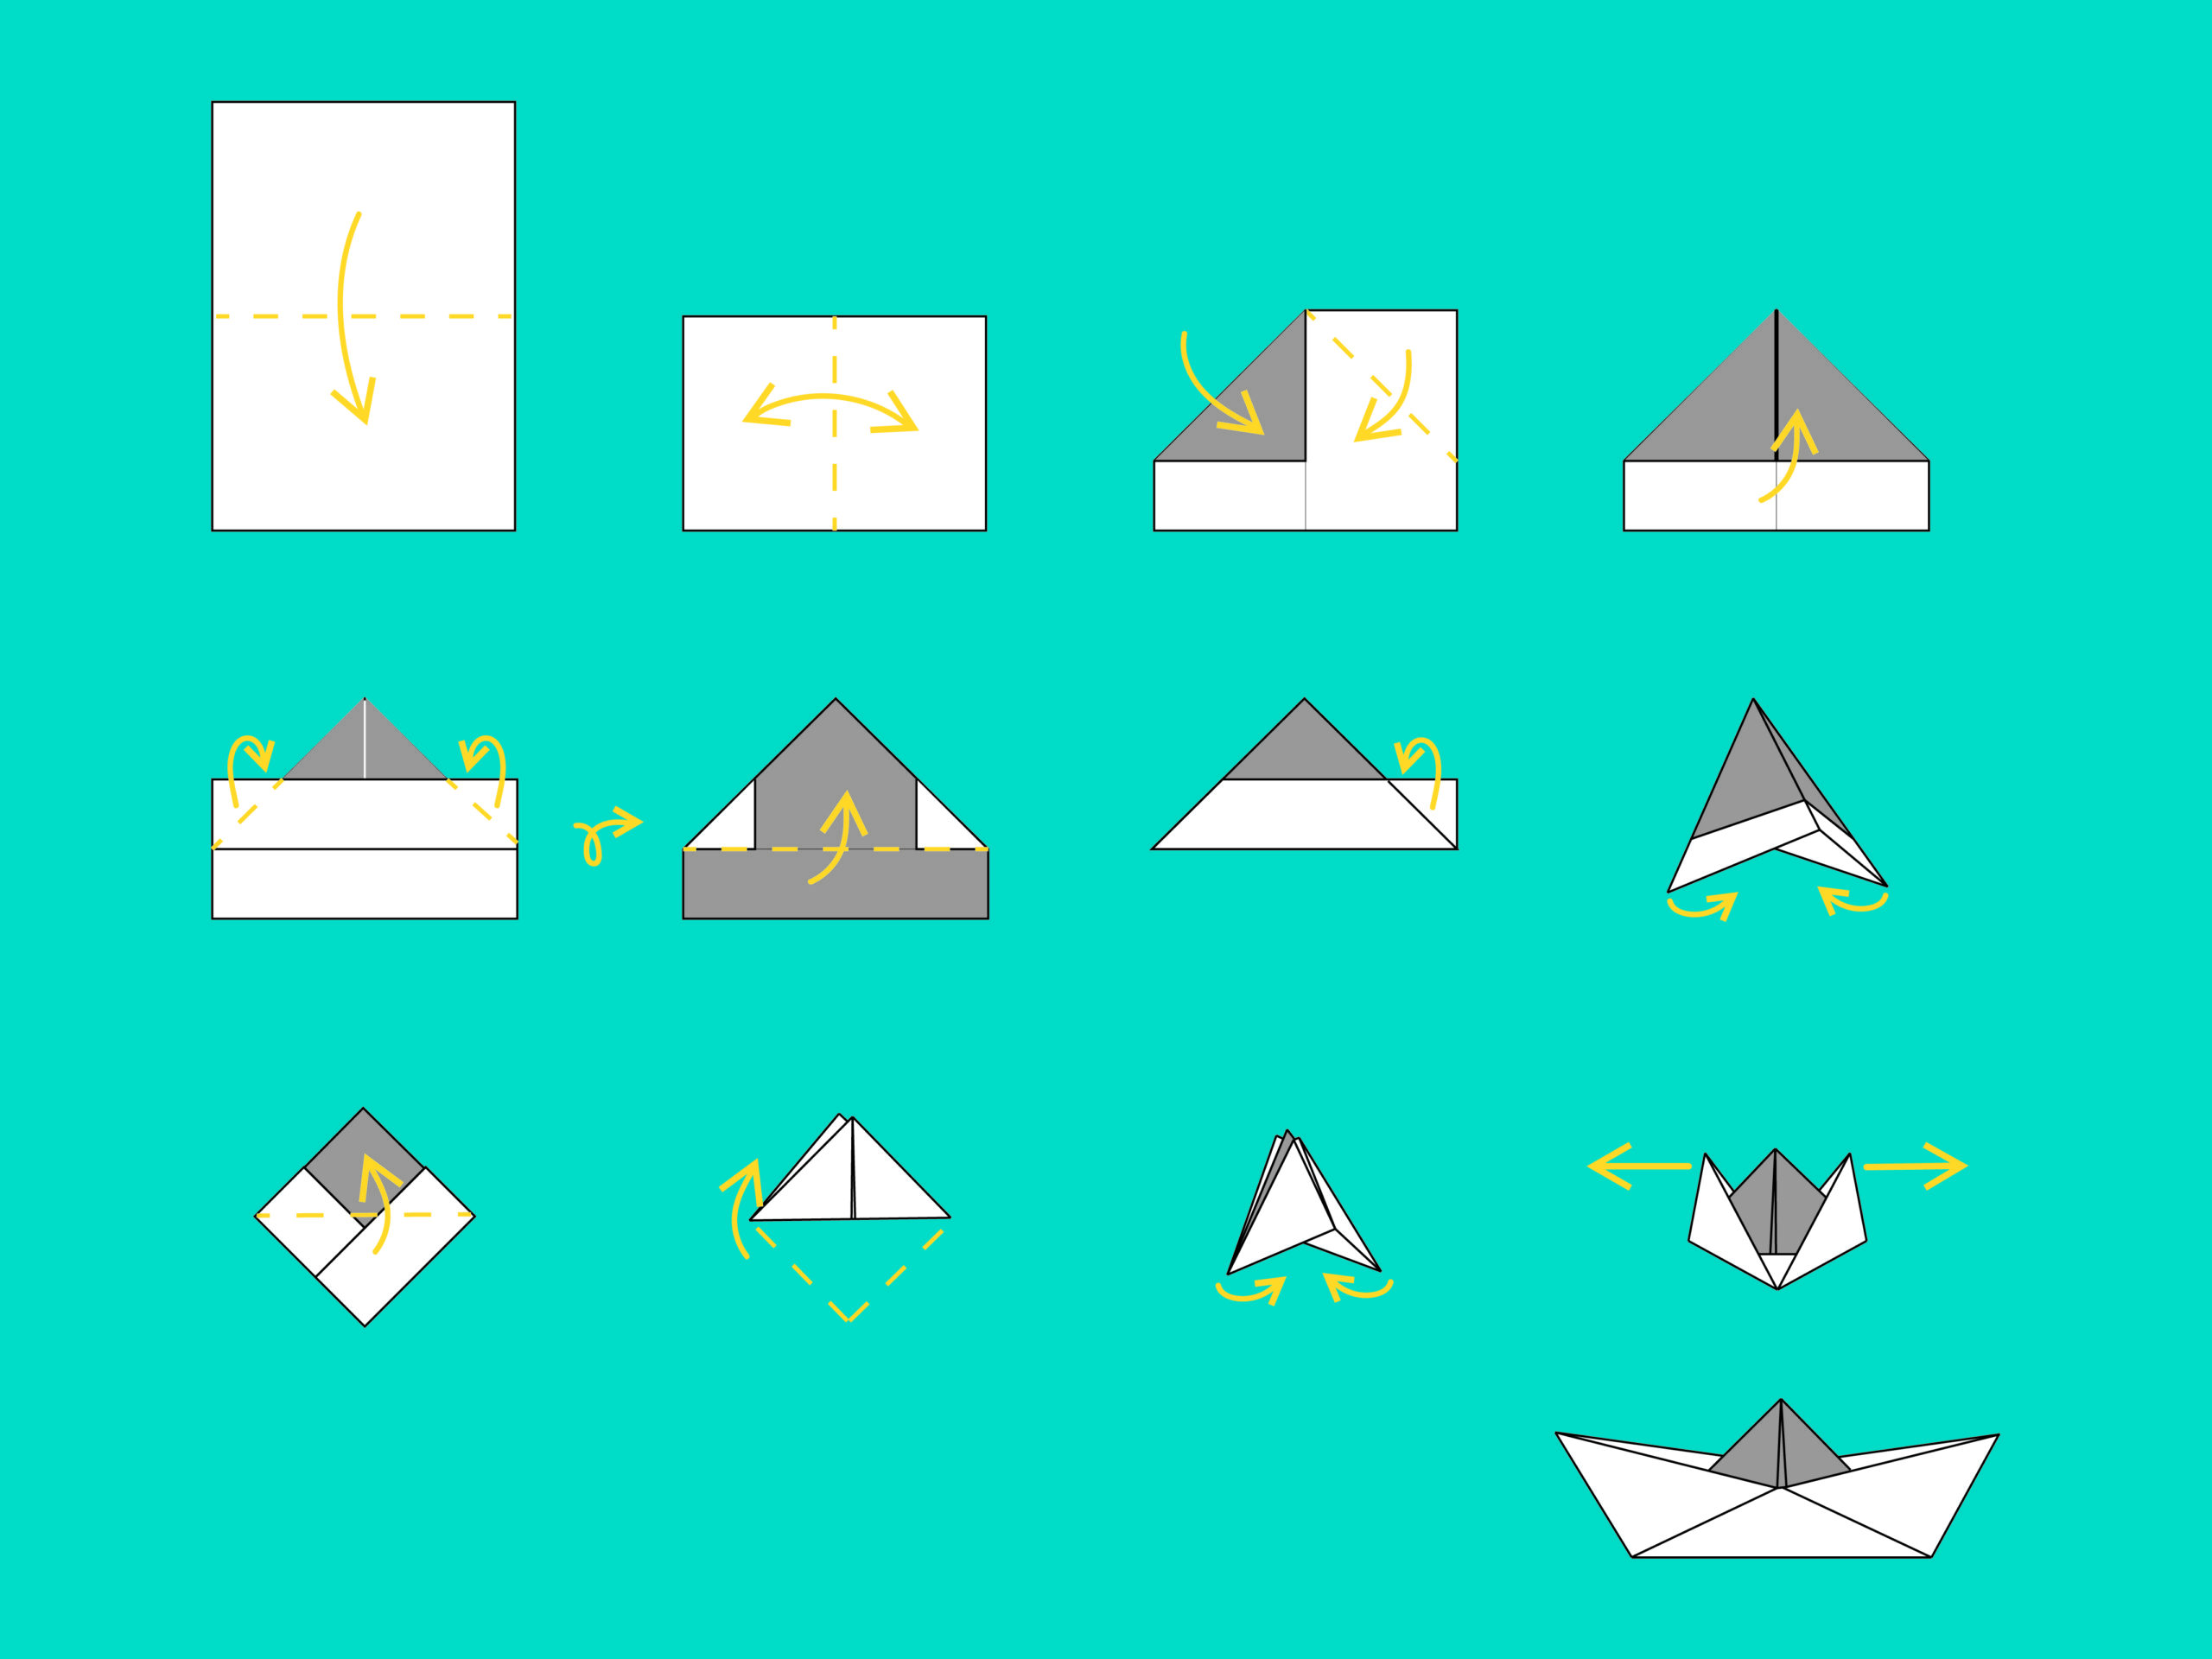 Instrukcja graficzna wykonania łódki z papieru.